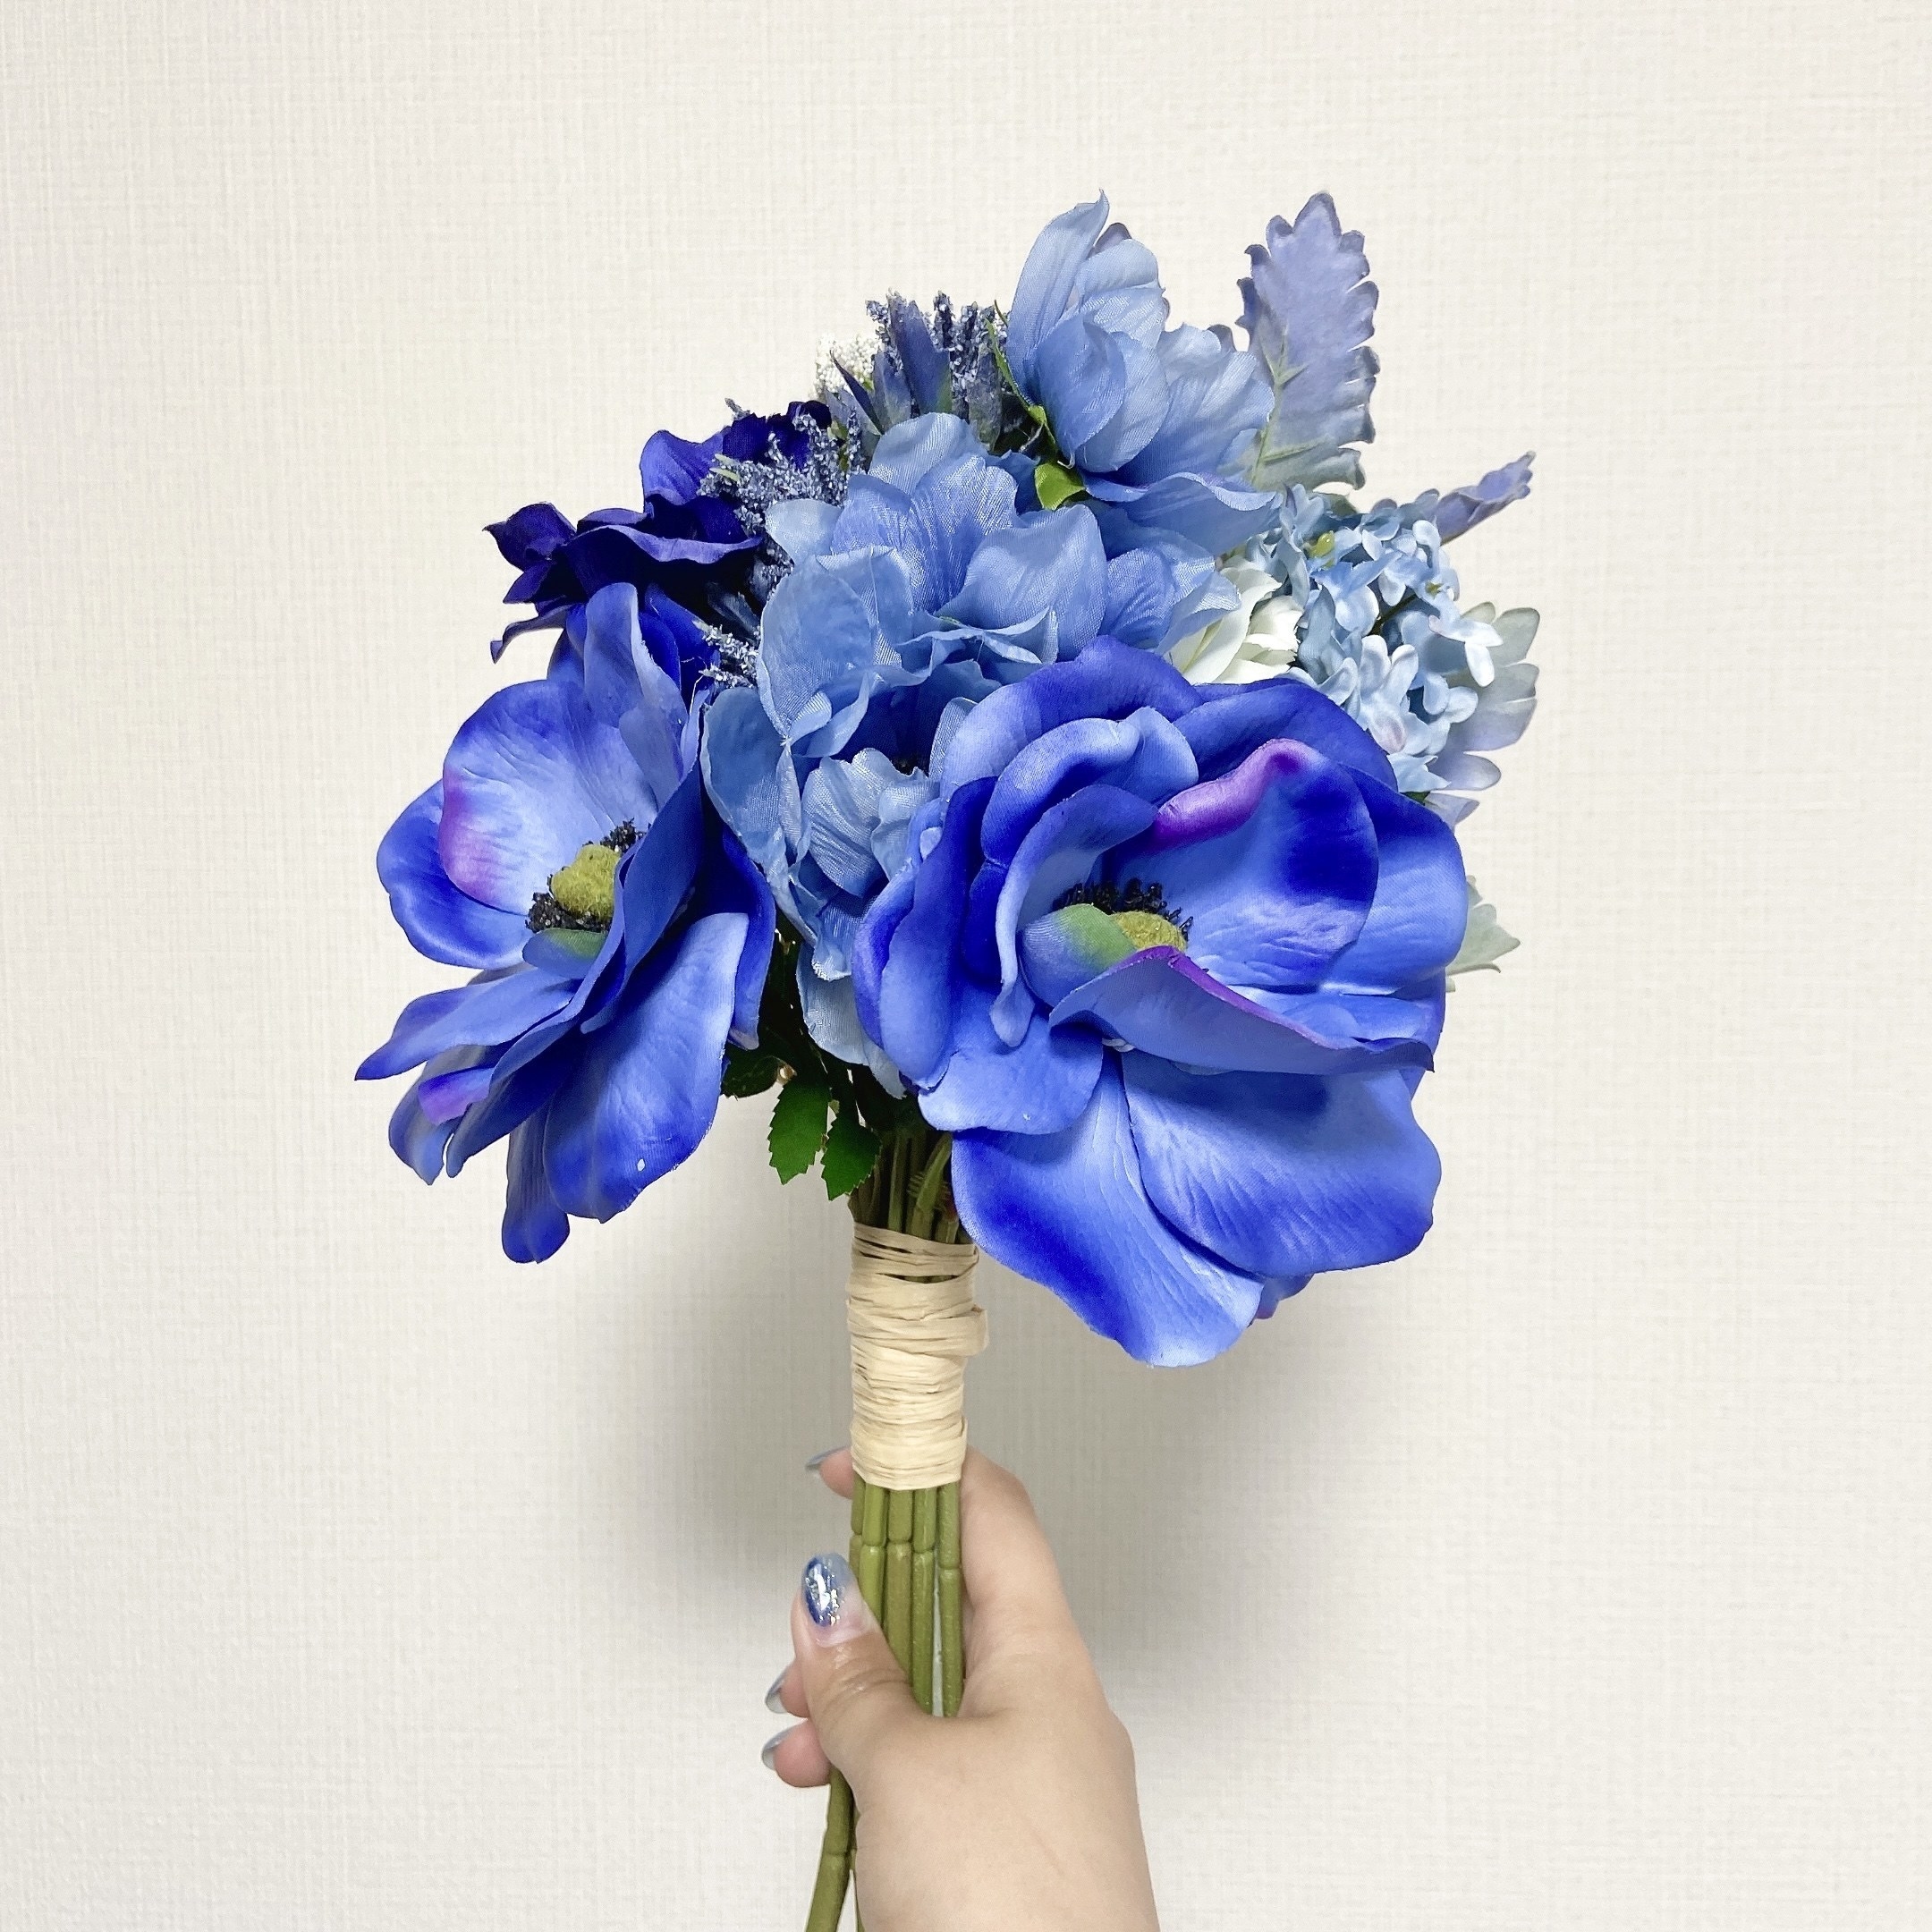 Francfranc（フランフラン）のオススメの造花「ブーケ アネモネミックス ブルー」